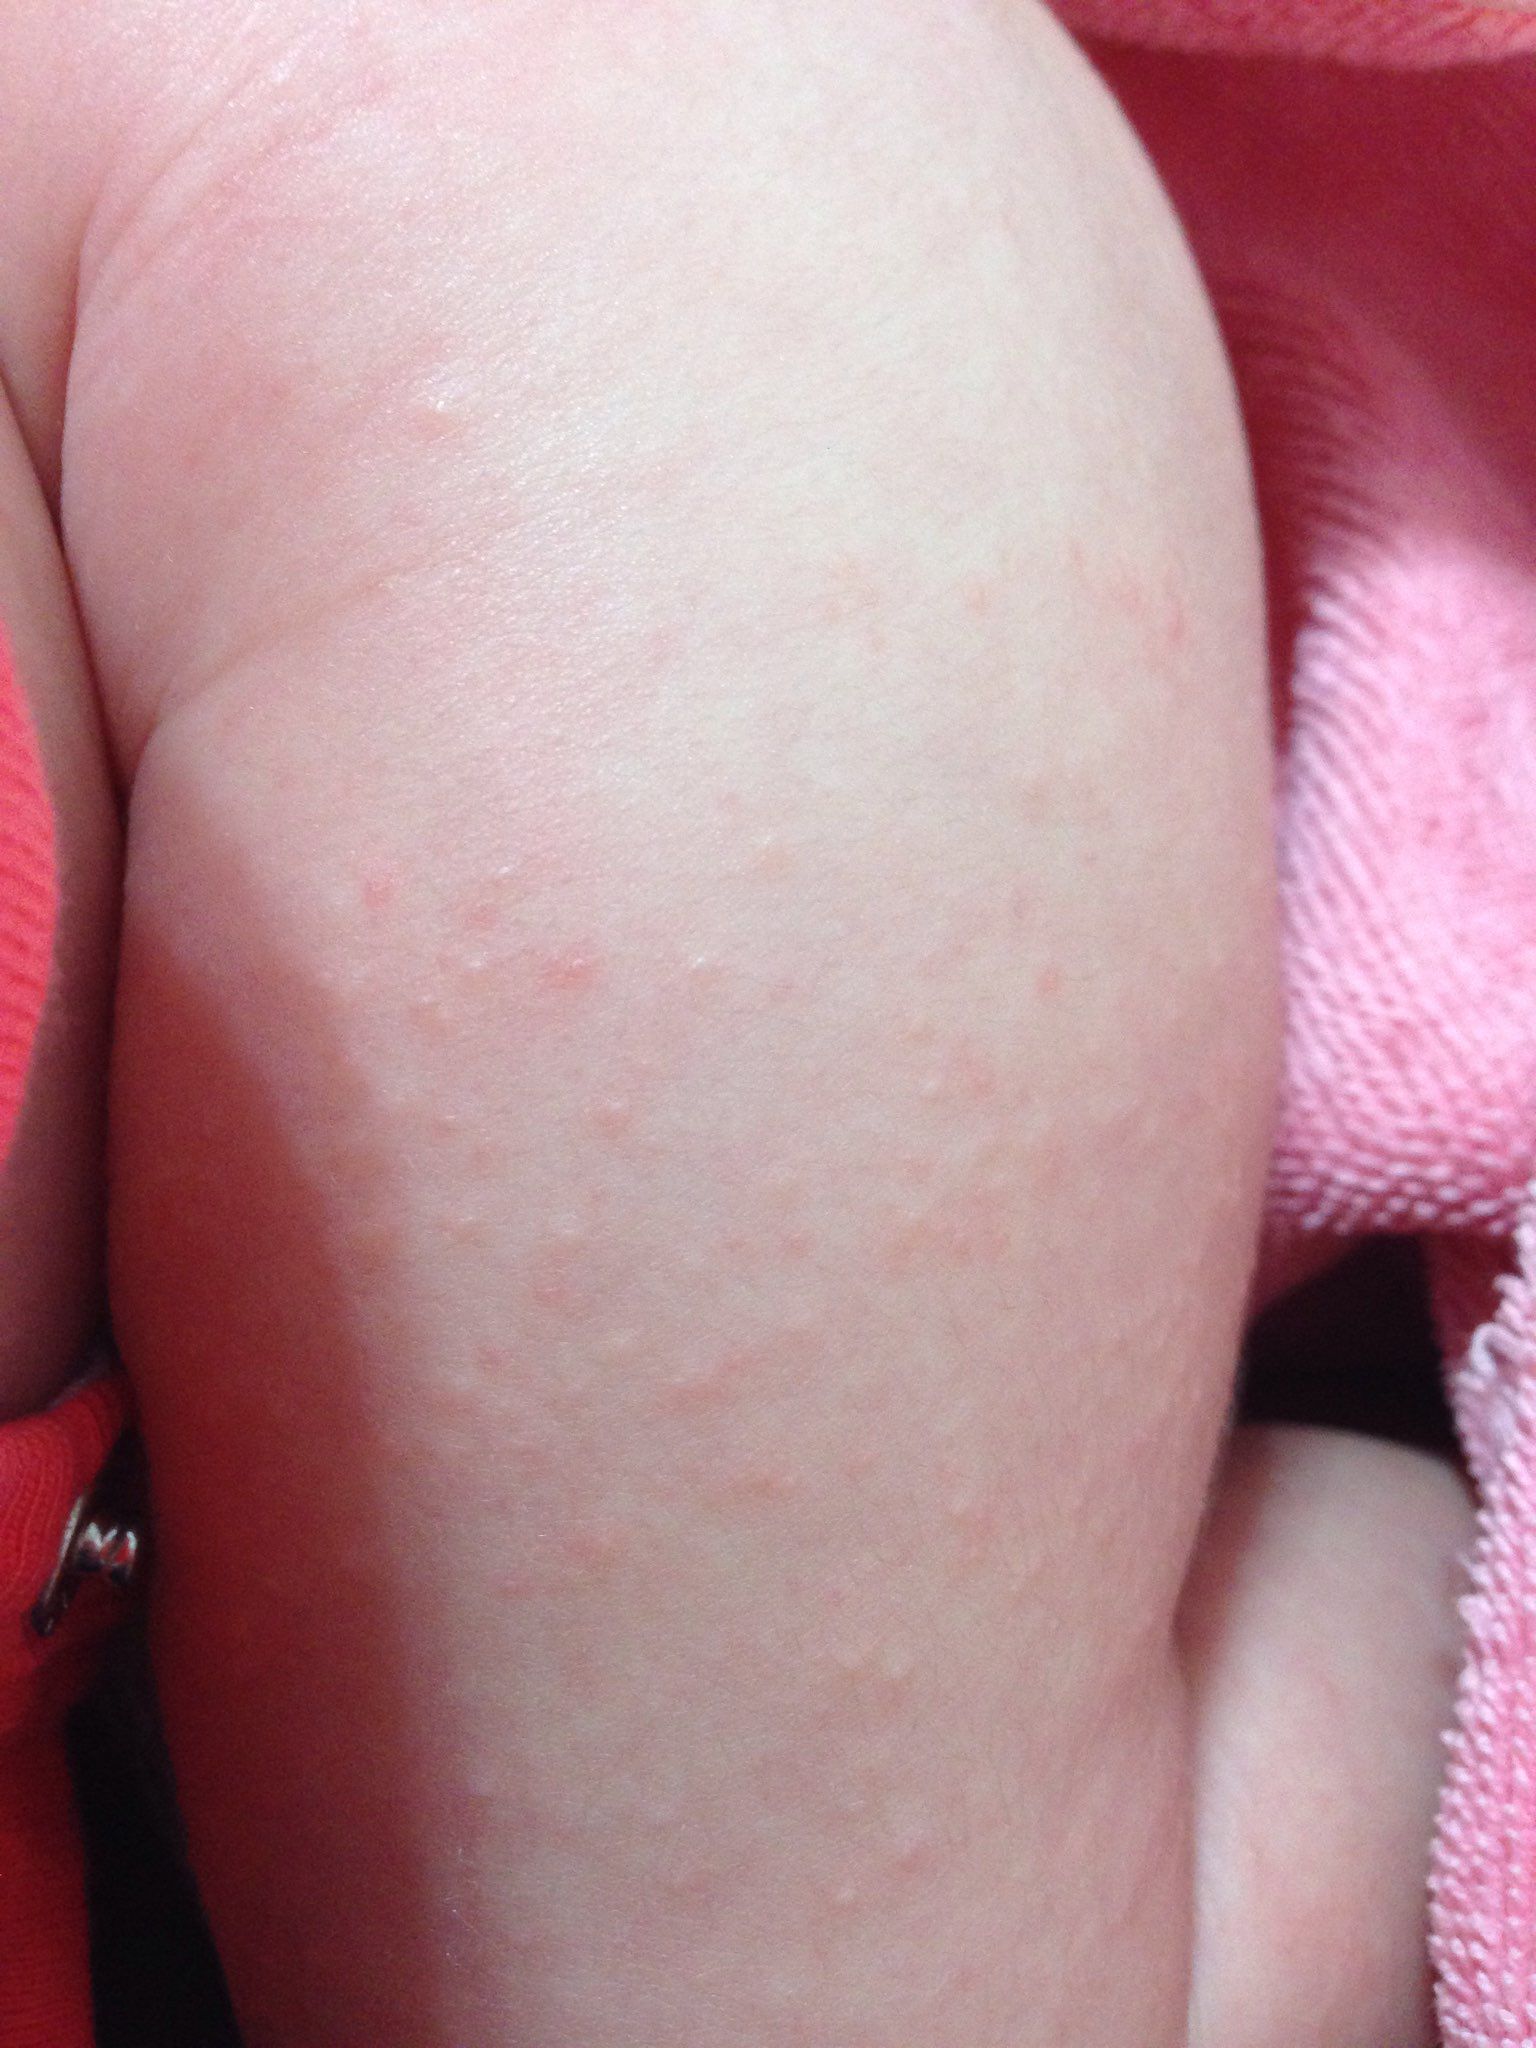 請問這是熱疹嗎？